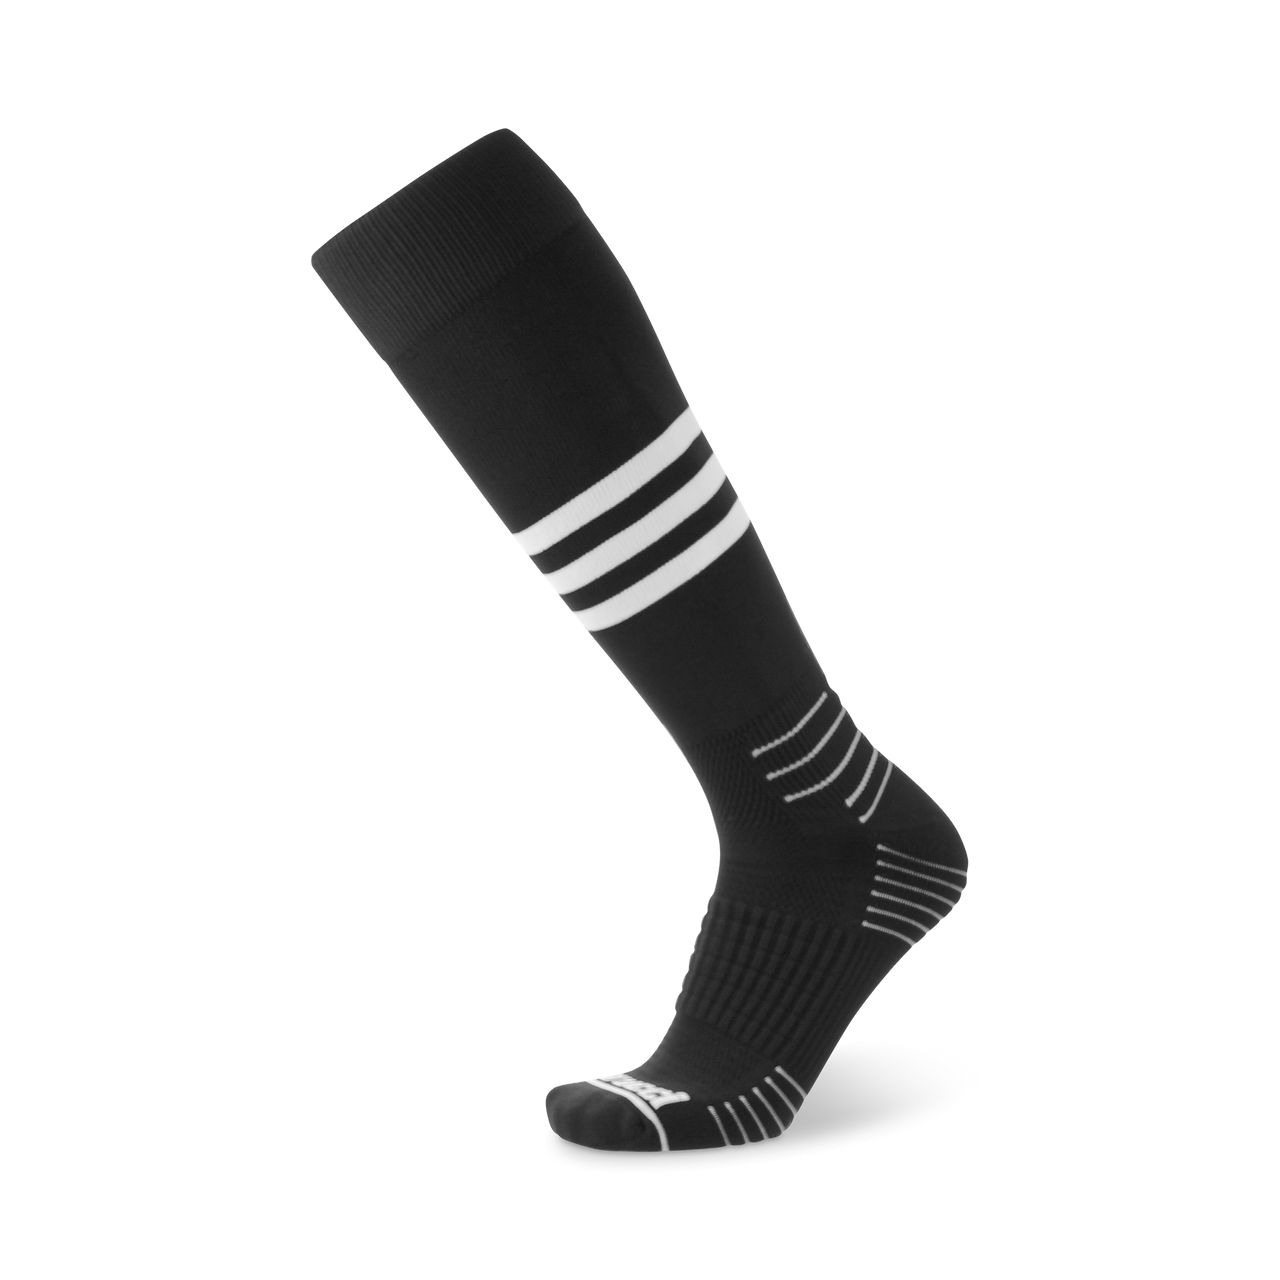 Marucci On-Field Socks: Striped Knee High